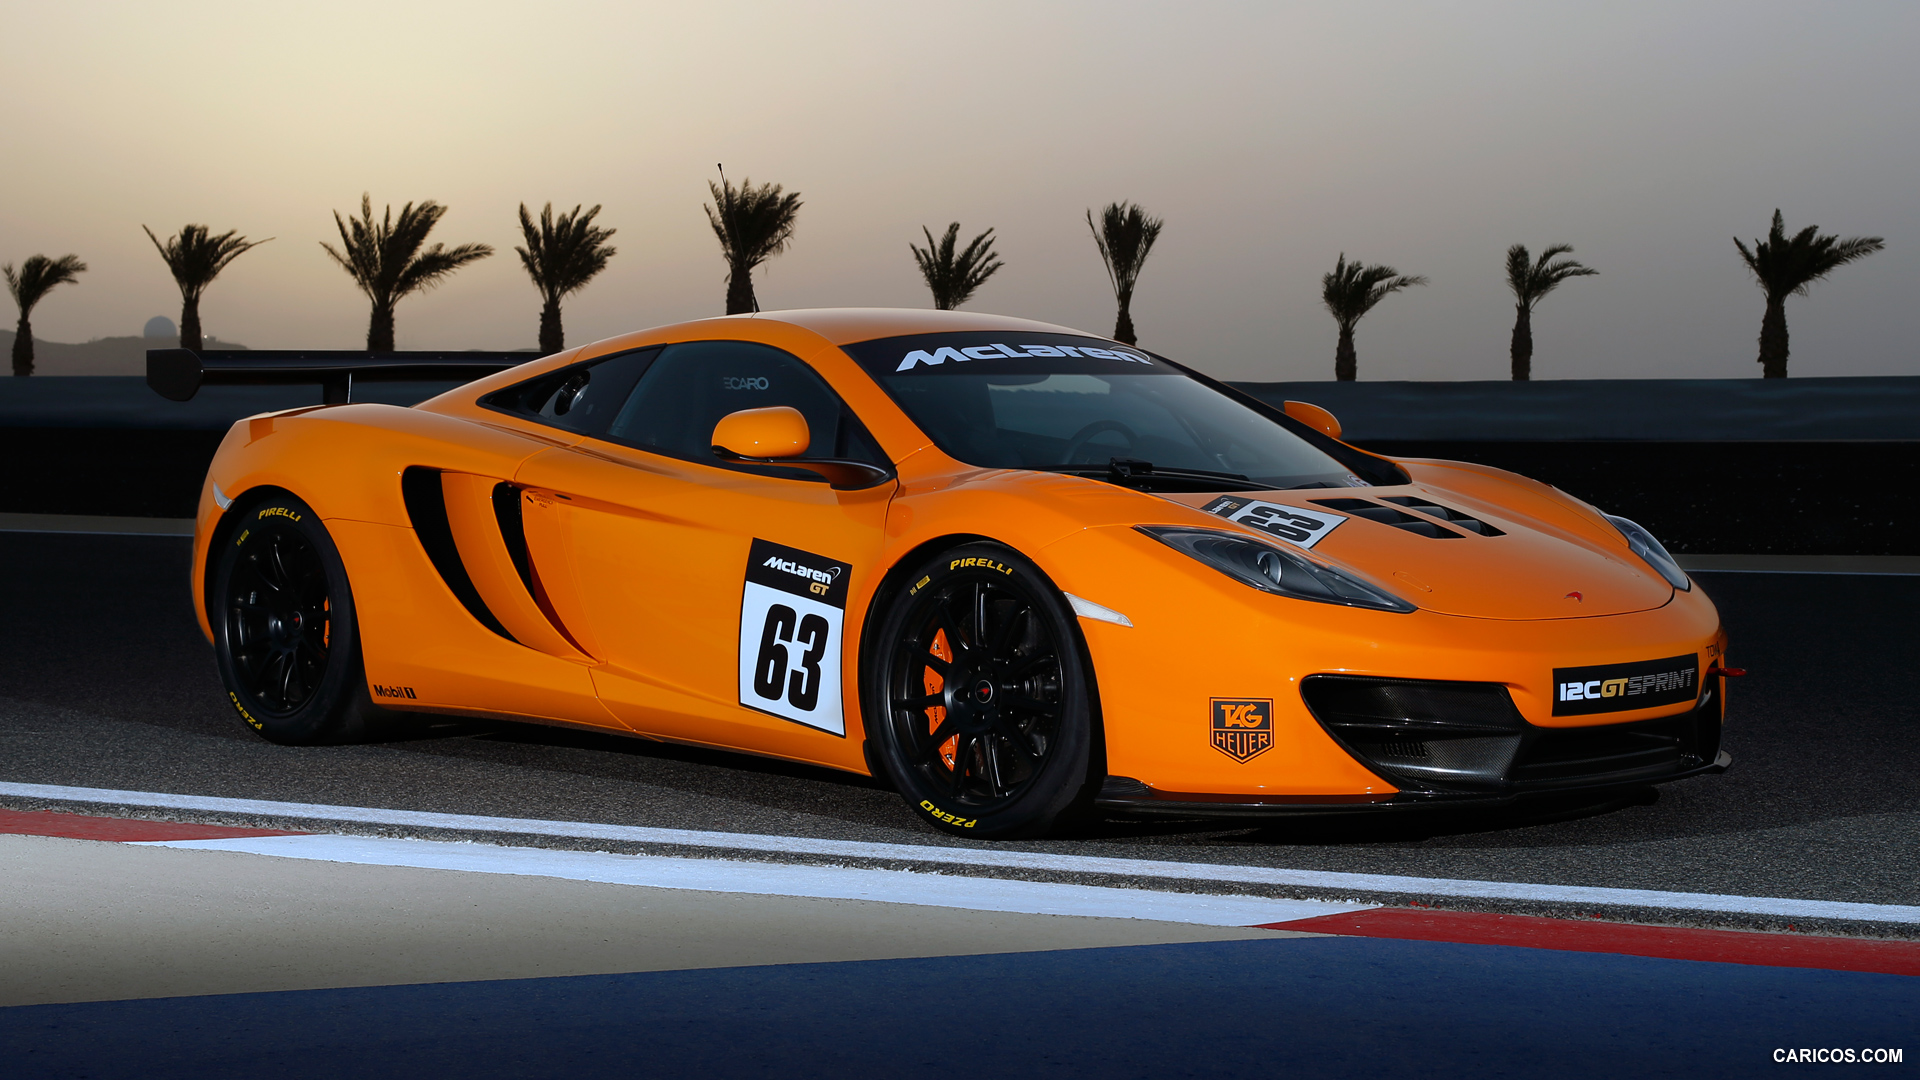 2014 McLaren 12C GT Sprint  - Front, #1 of 9